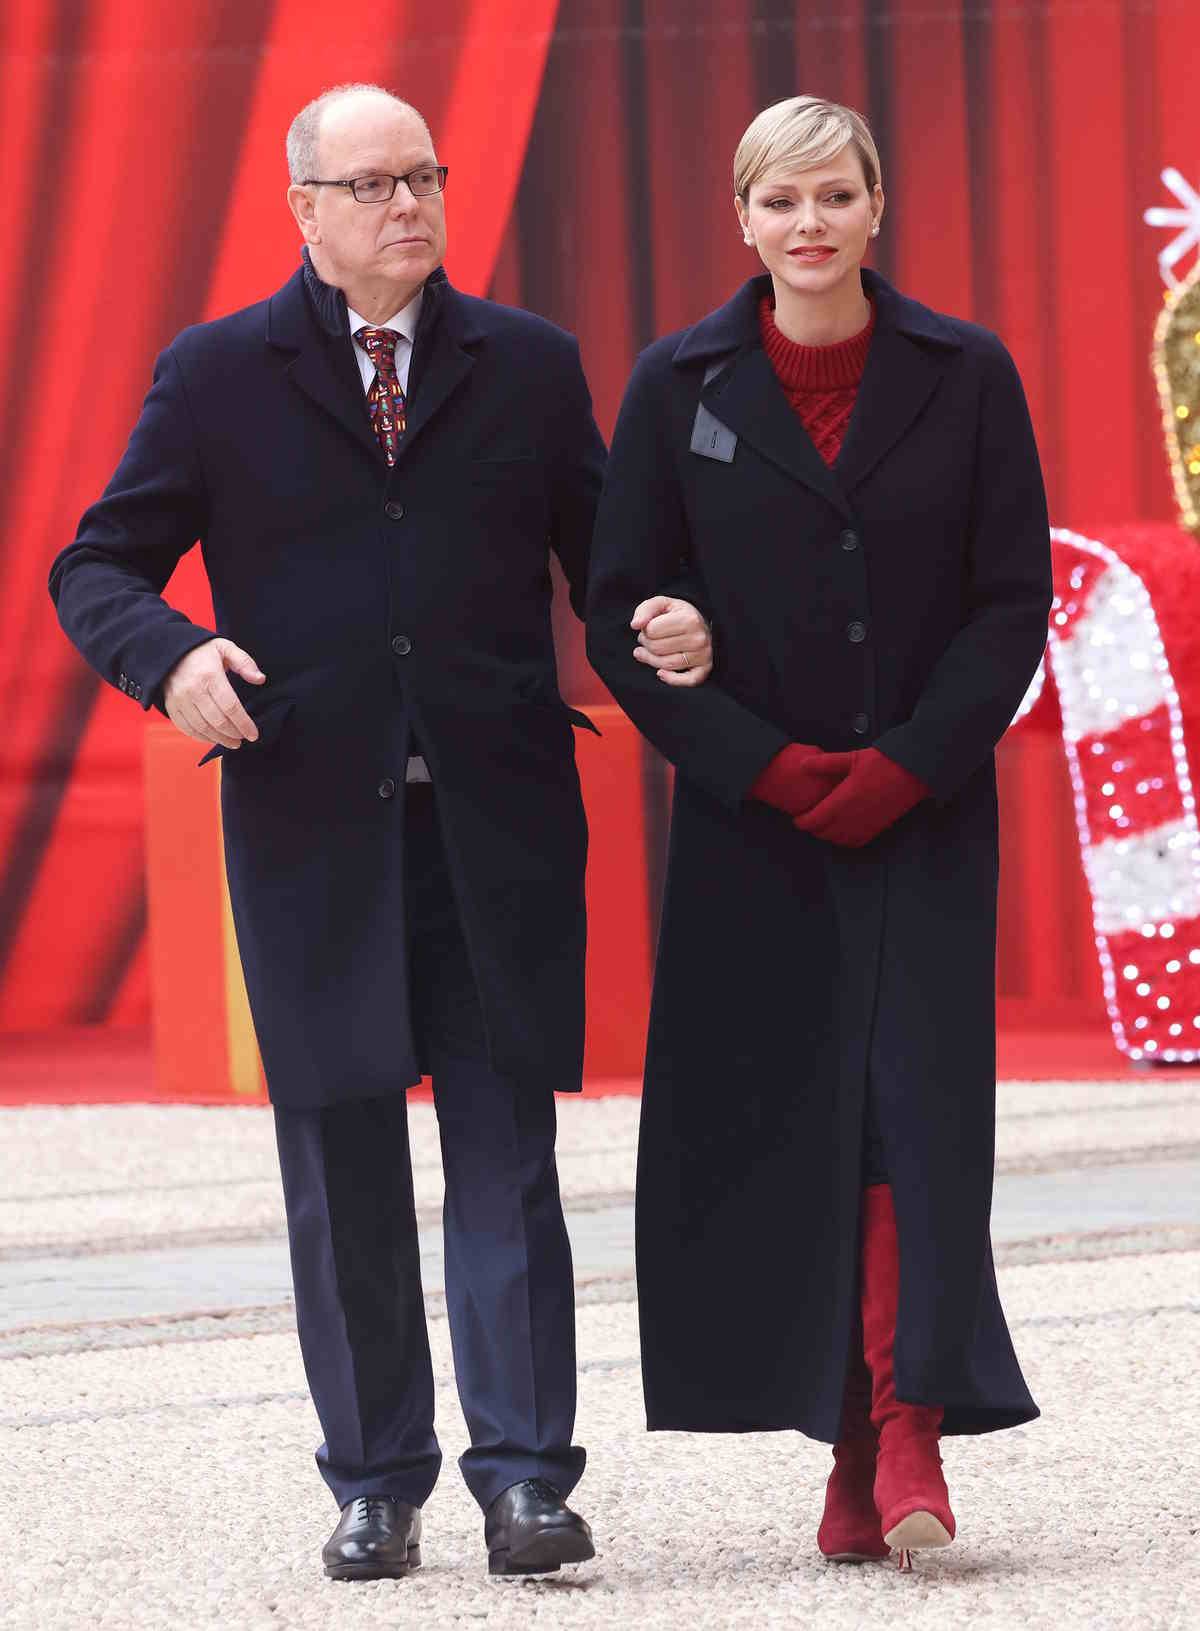 Księżna Charlene olśniewa w czerwonych kozakach Manolo Blahnika. W najnowszej stylizacji księżnej Charlene króluje czerwony sweter, zamszowe czerwone kozaki i czerwone rękawiczki zestawione z czarnym płaszczem.